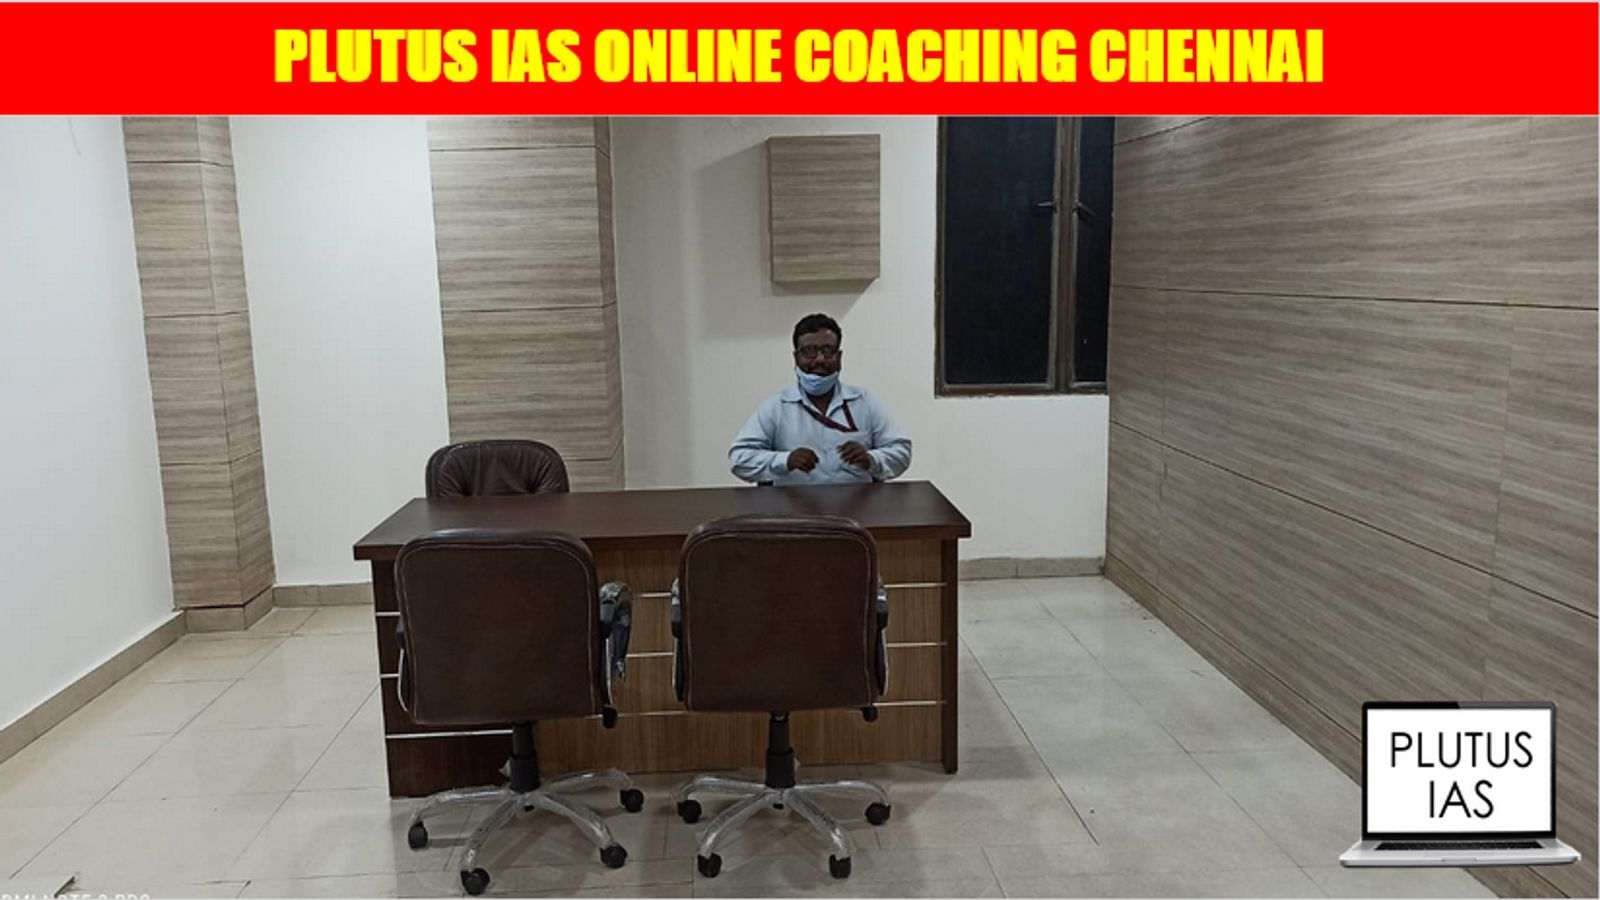 Plutus IAS Online Coaching Chennai